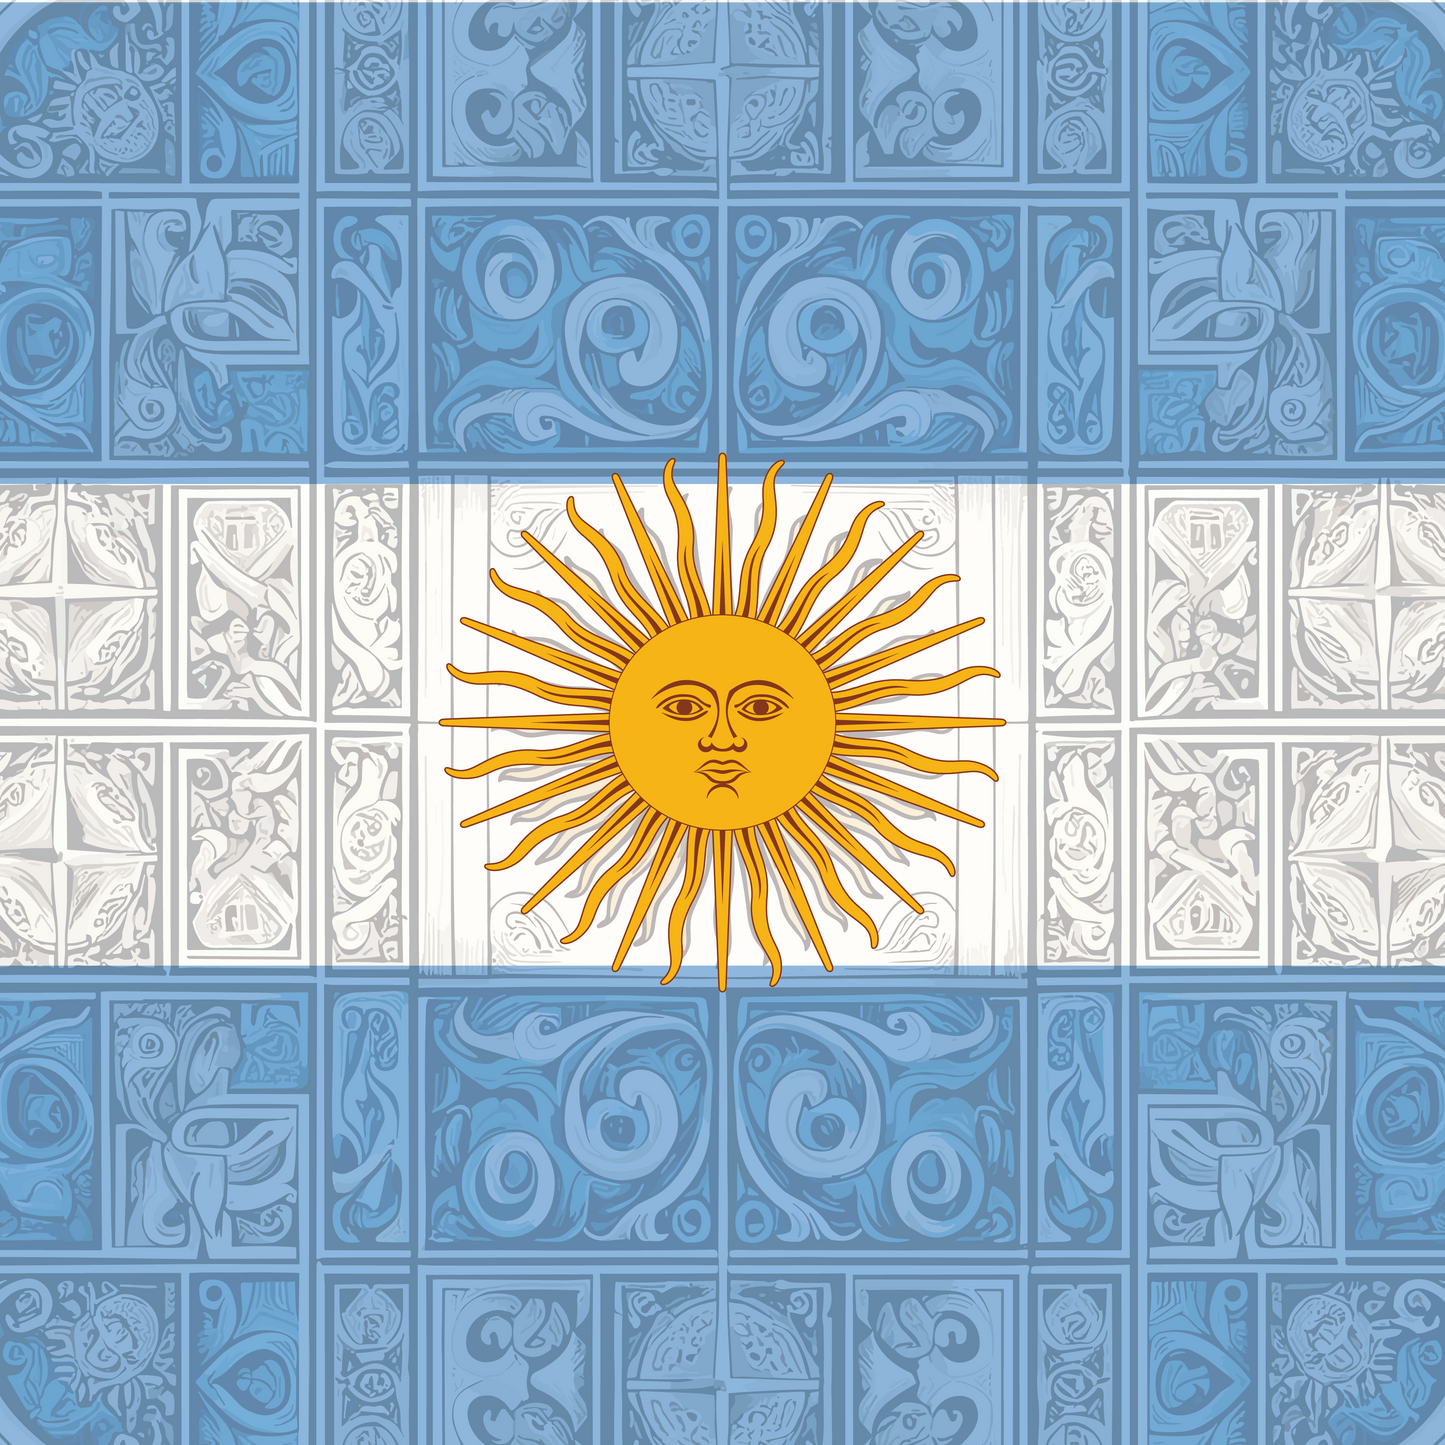 Argentina Flag Bandana